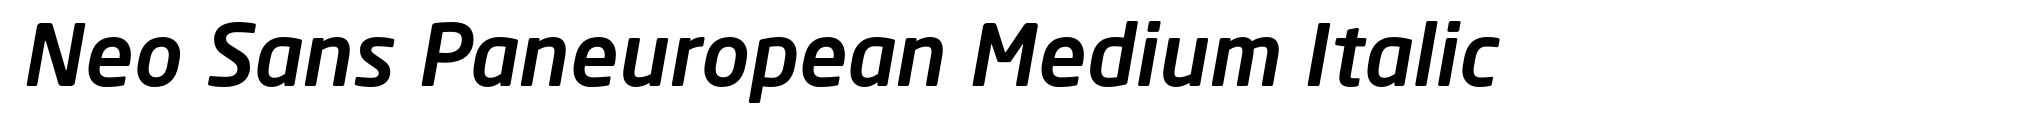 Neo Sans Paneuropean Medium Italic image